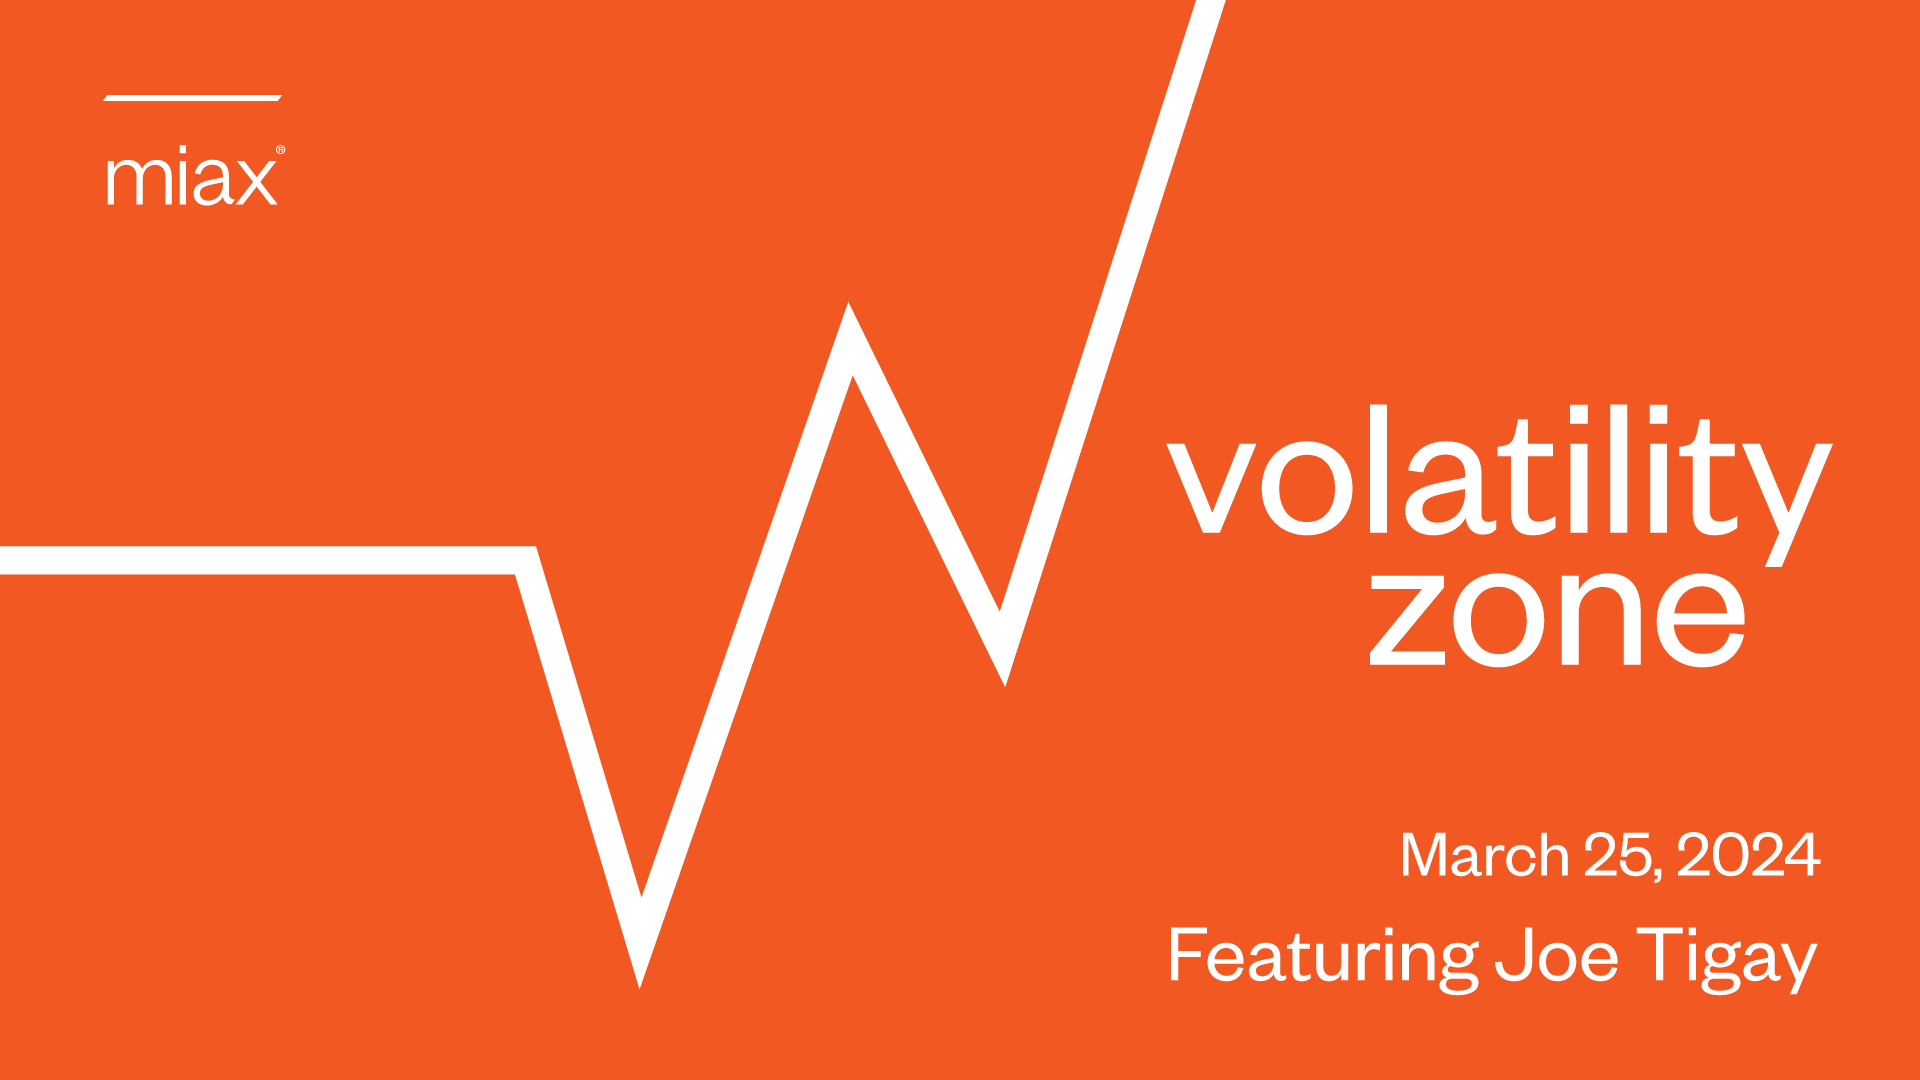 MIAX Volatility Zone March 25, 2024